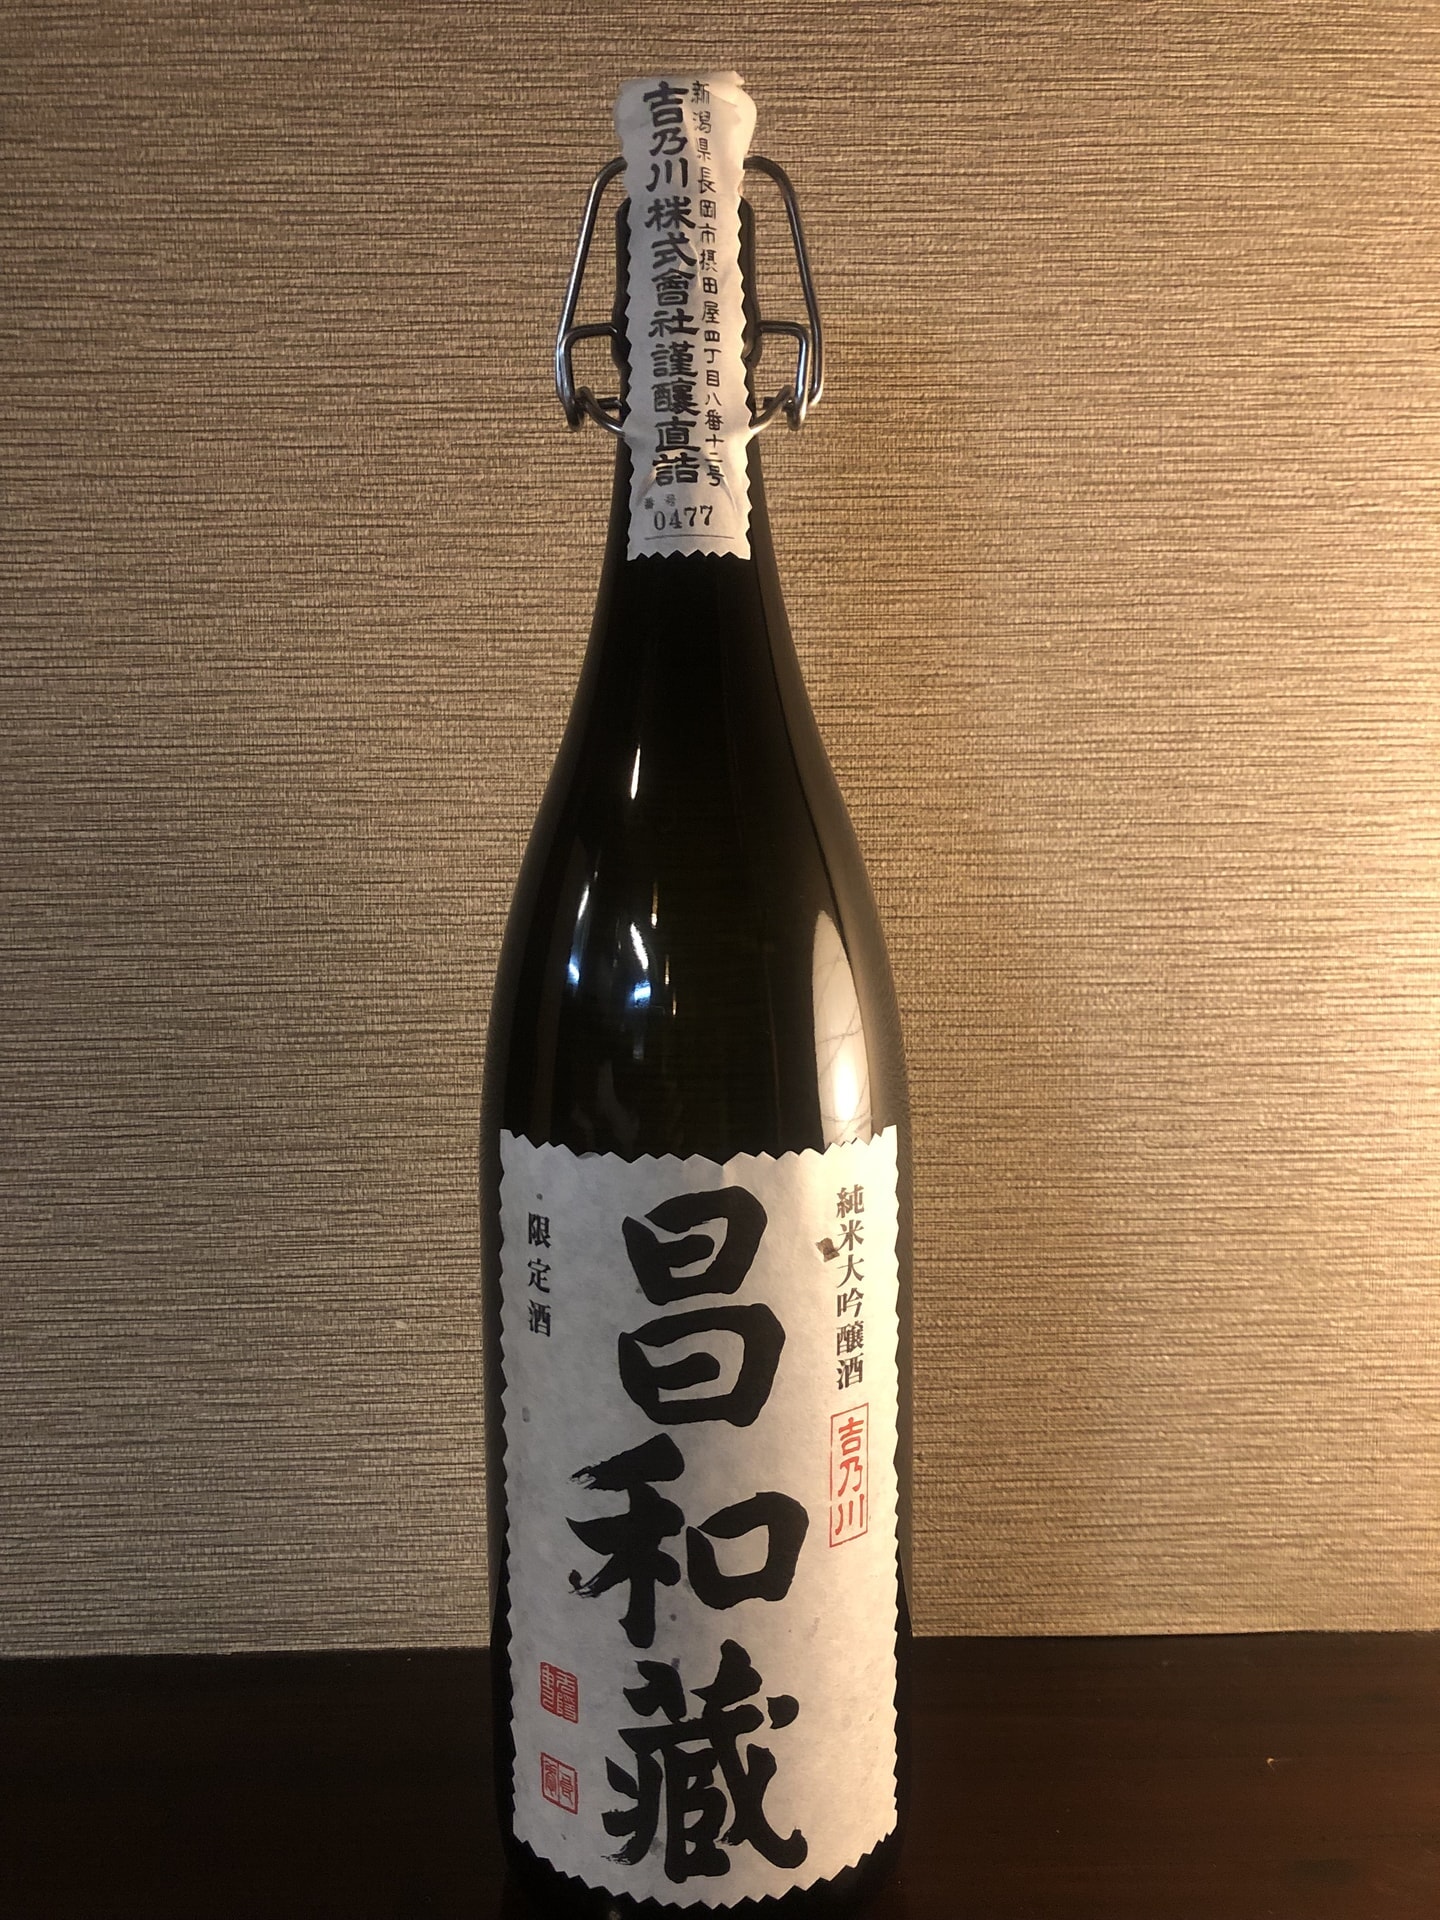 日本酒の入荷情報「昌和蔵 純米大吟醸」 | 素材と向き合ったこだわりの